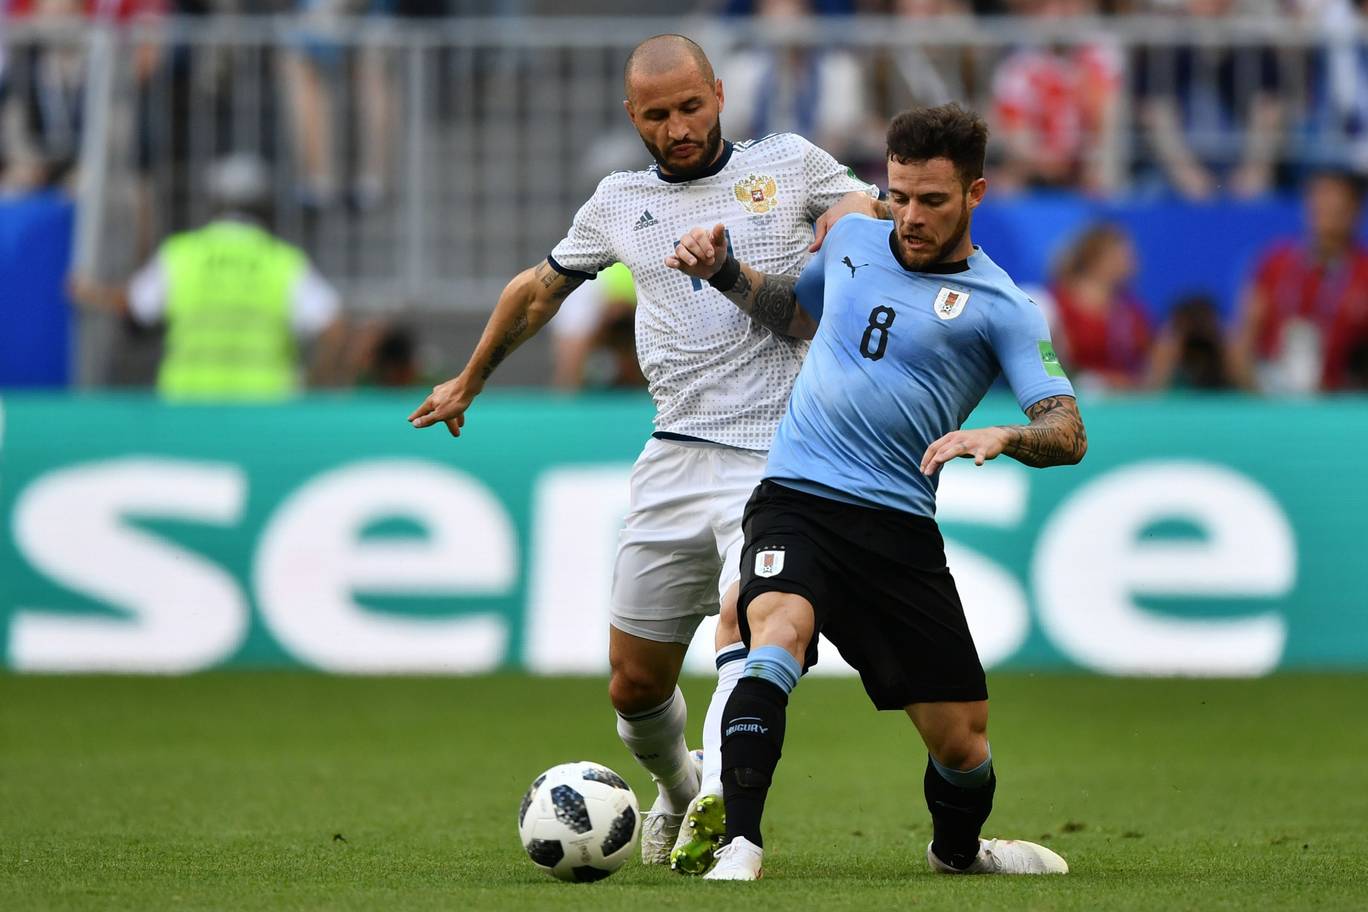 Chấm điểm Uruguay: Ghi bàn nhưng Cavani vẫn tệ nhất đội - Bóng Đá